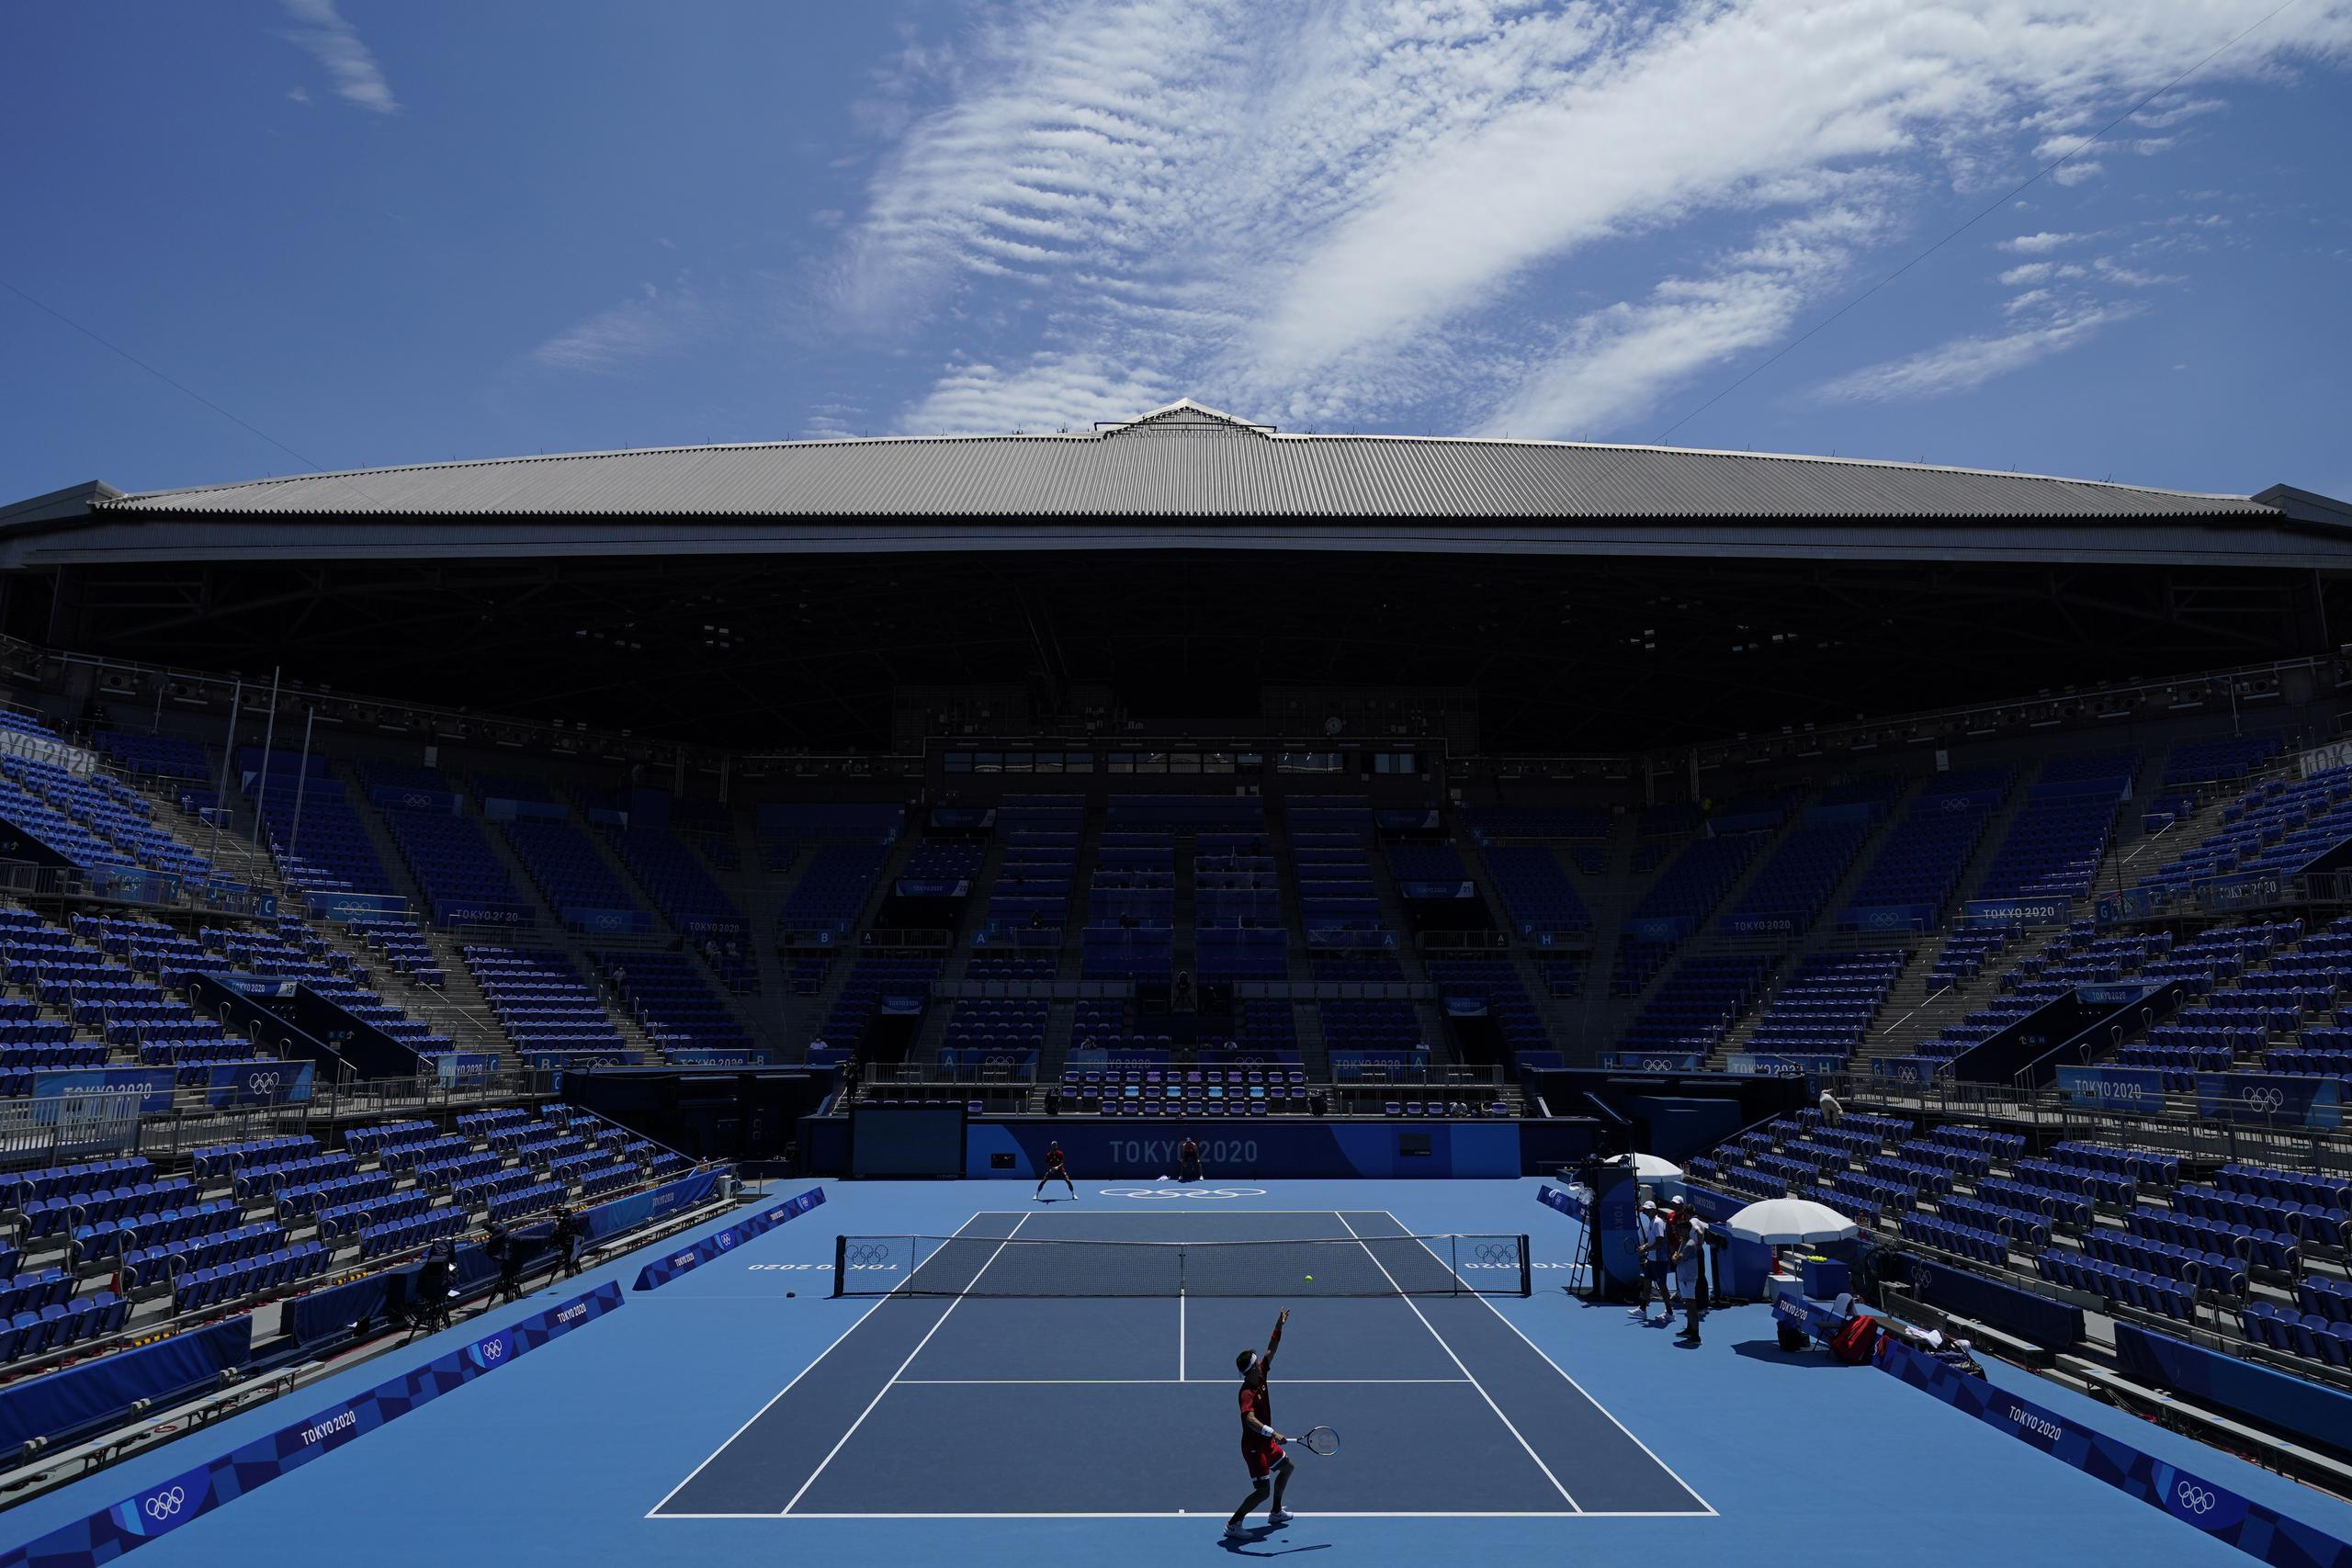 Los eventos del tenis de las Olimpiadas Tokio 2020 arrancaron el sábado en la mañana en el Ariake Tennis Center de Tokio.